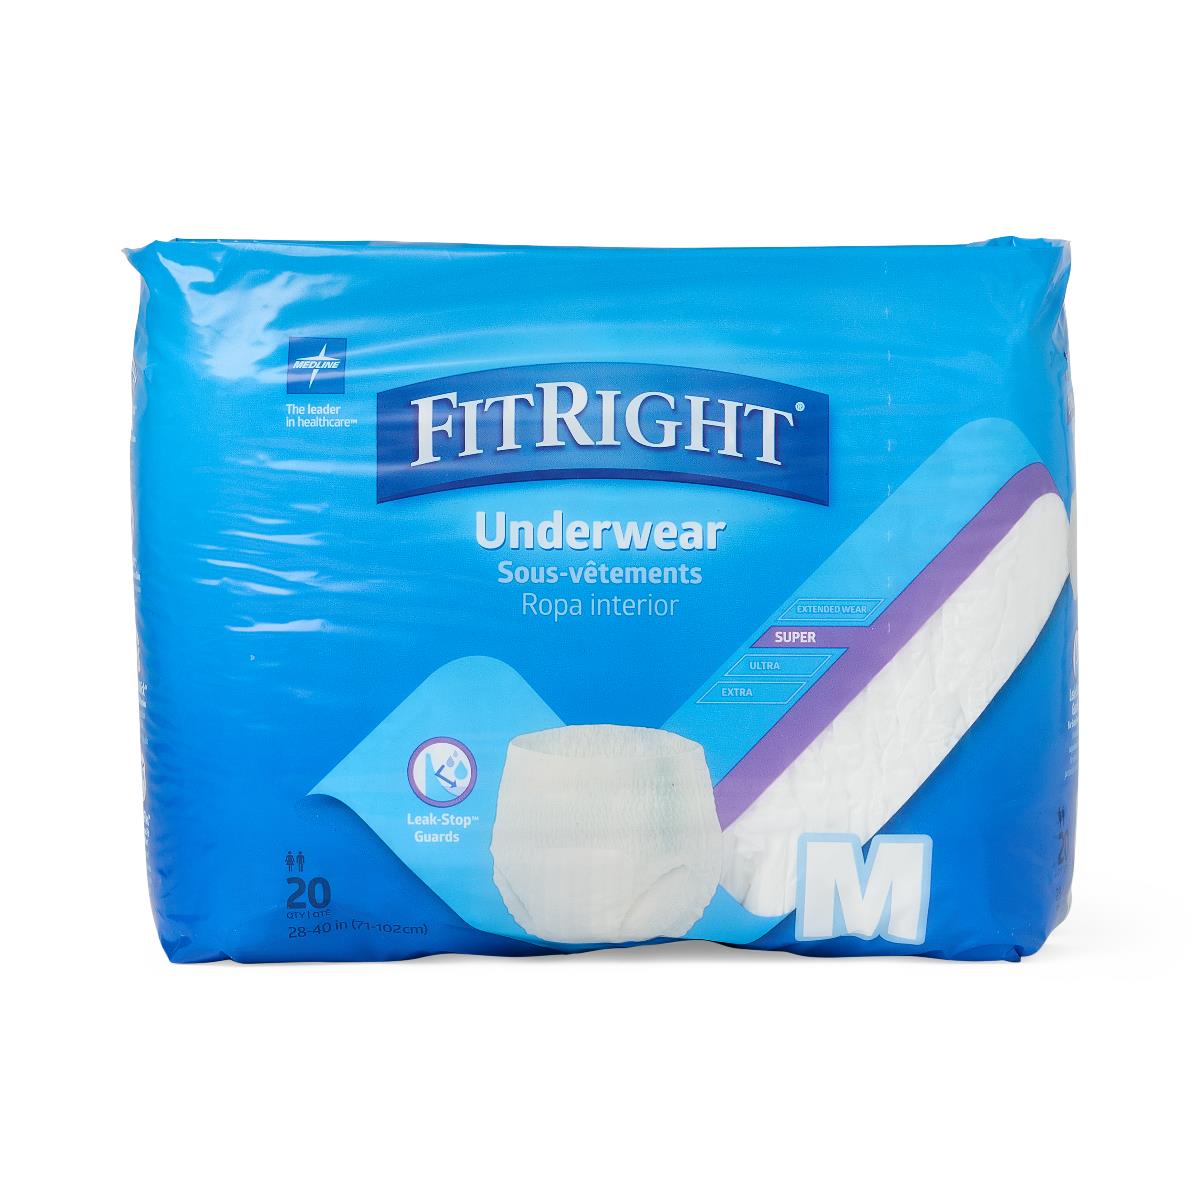 FitRight Super Protective Underwear